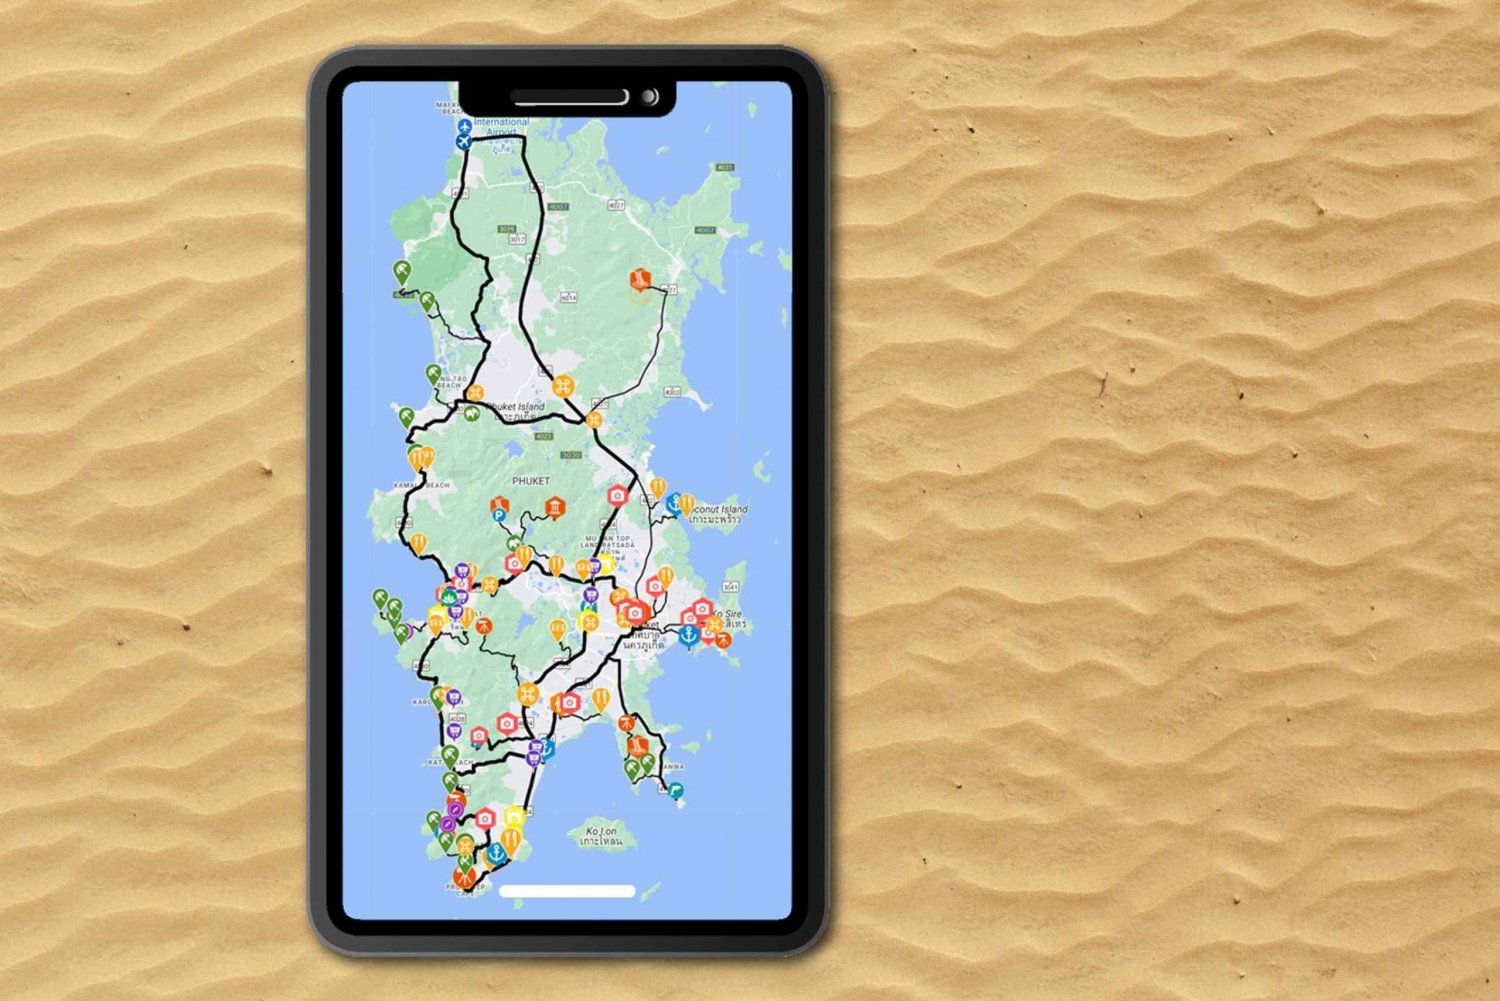 Phuket: Island Exploration Guide-app med frakoblet innhold